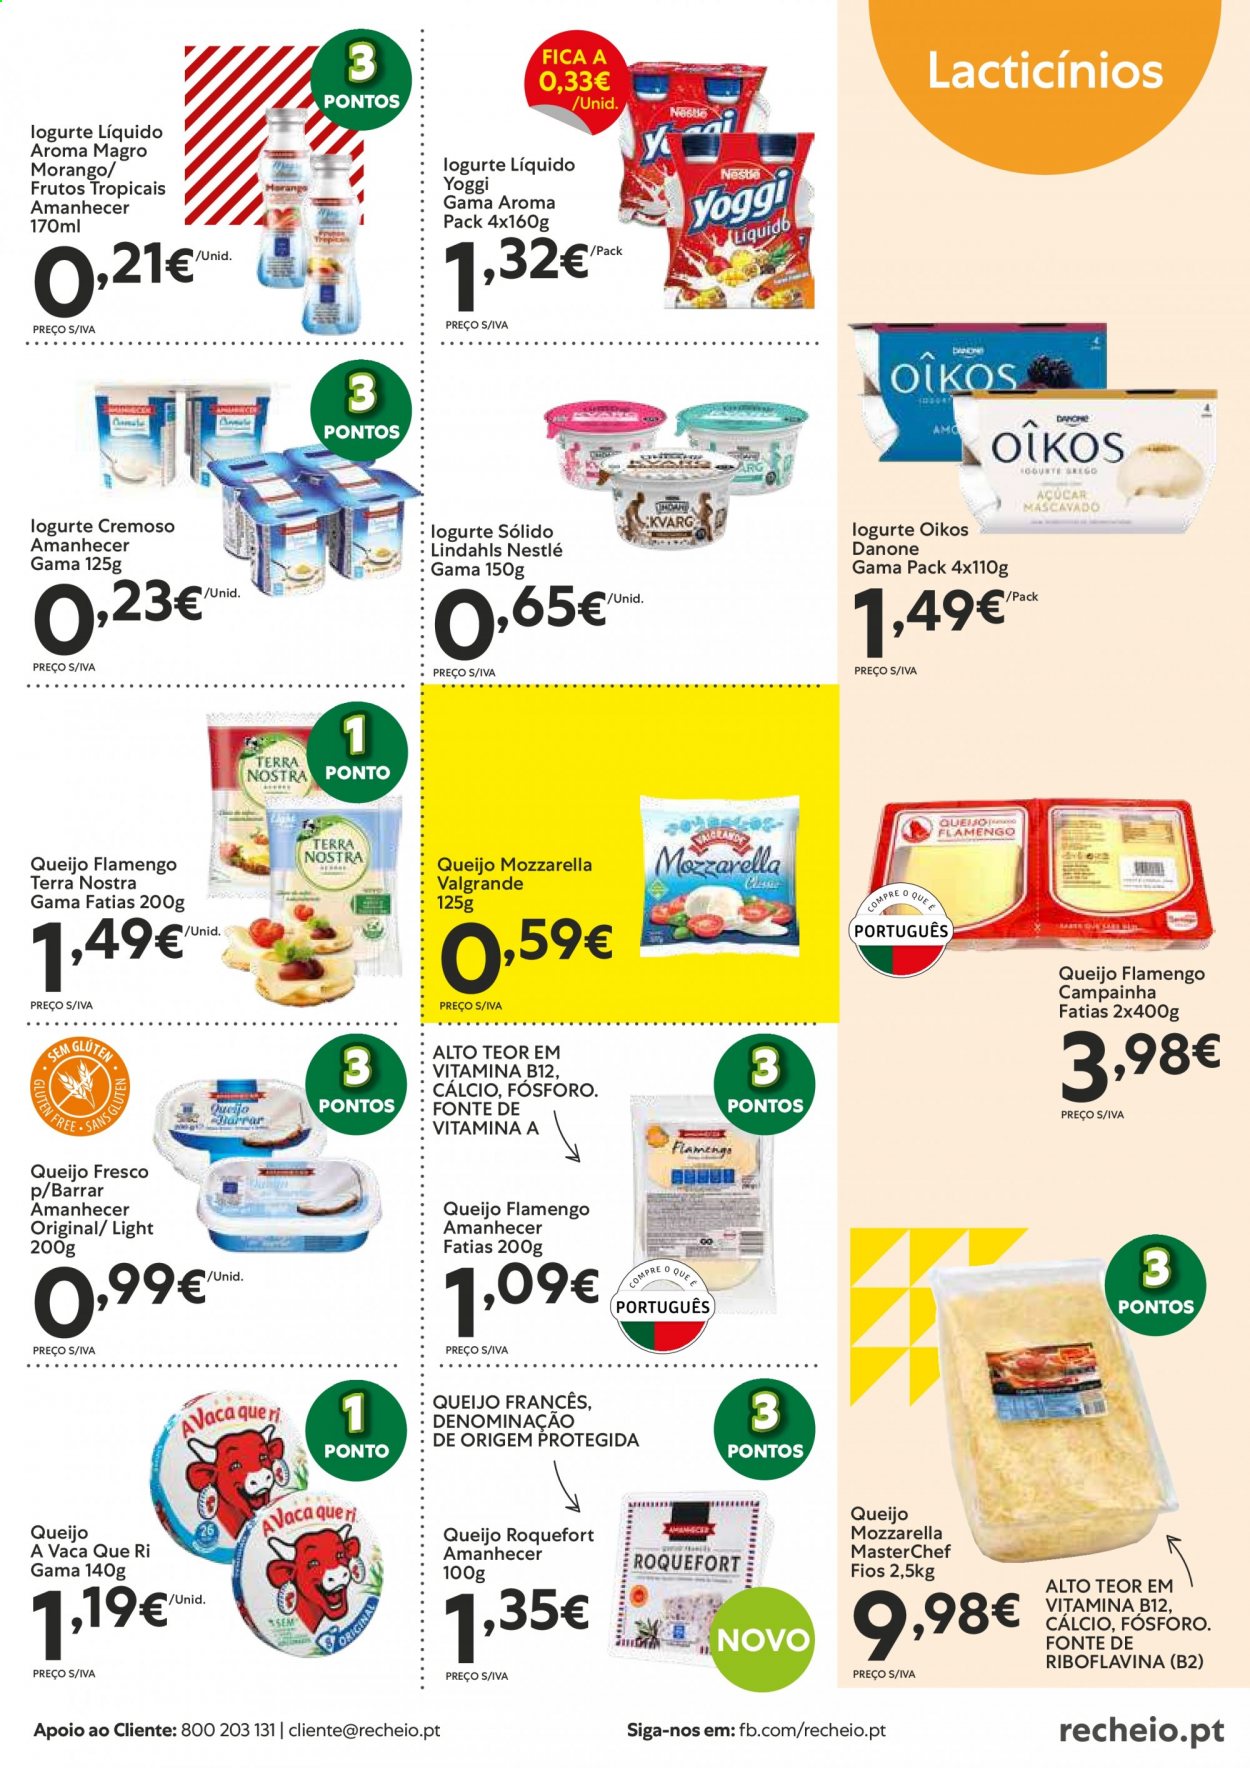 thumbnail - Folheto Recheio - 19.1.2021 - 1.2.2021 - Produtos em promoção - queijo, roquefort, mozzarella, iogurte, Danone, iogurte líquido, Nestlé. Página 5.